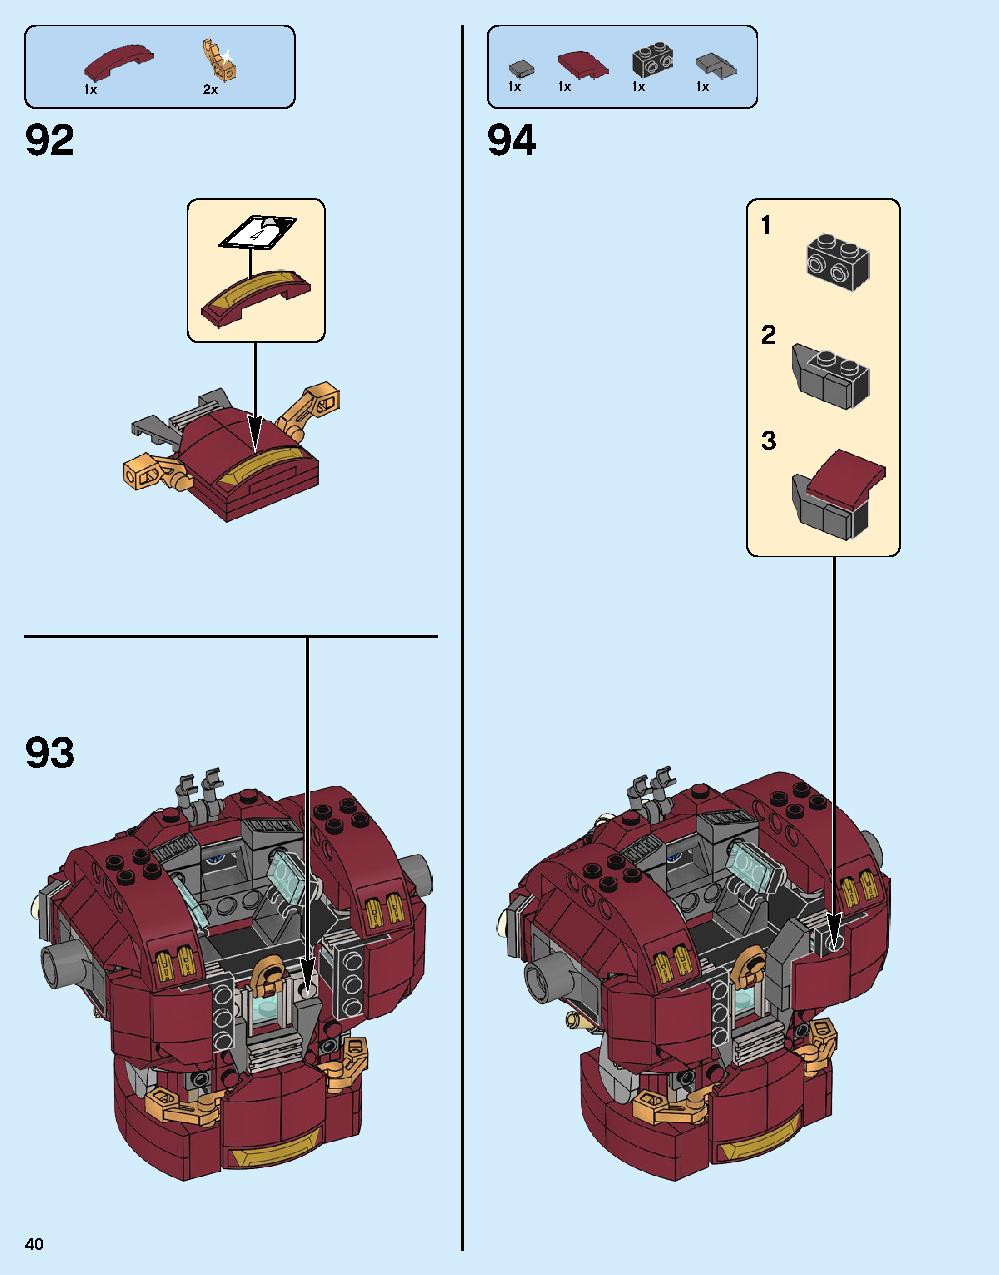 ハルクバスター：ウルトロン・エディション 76105 レゴの商品情報 レゴの説明書・組立方法 40 page